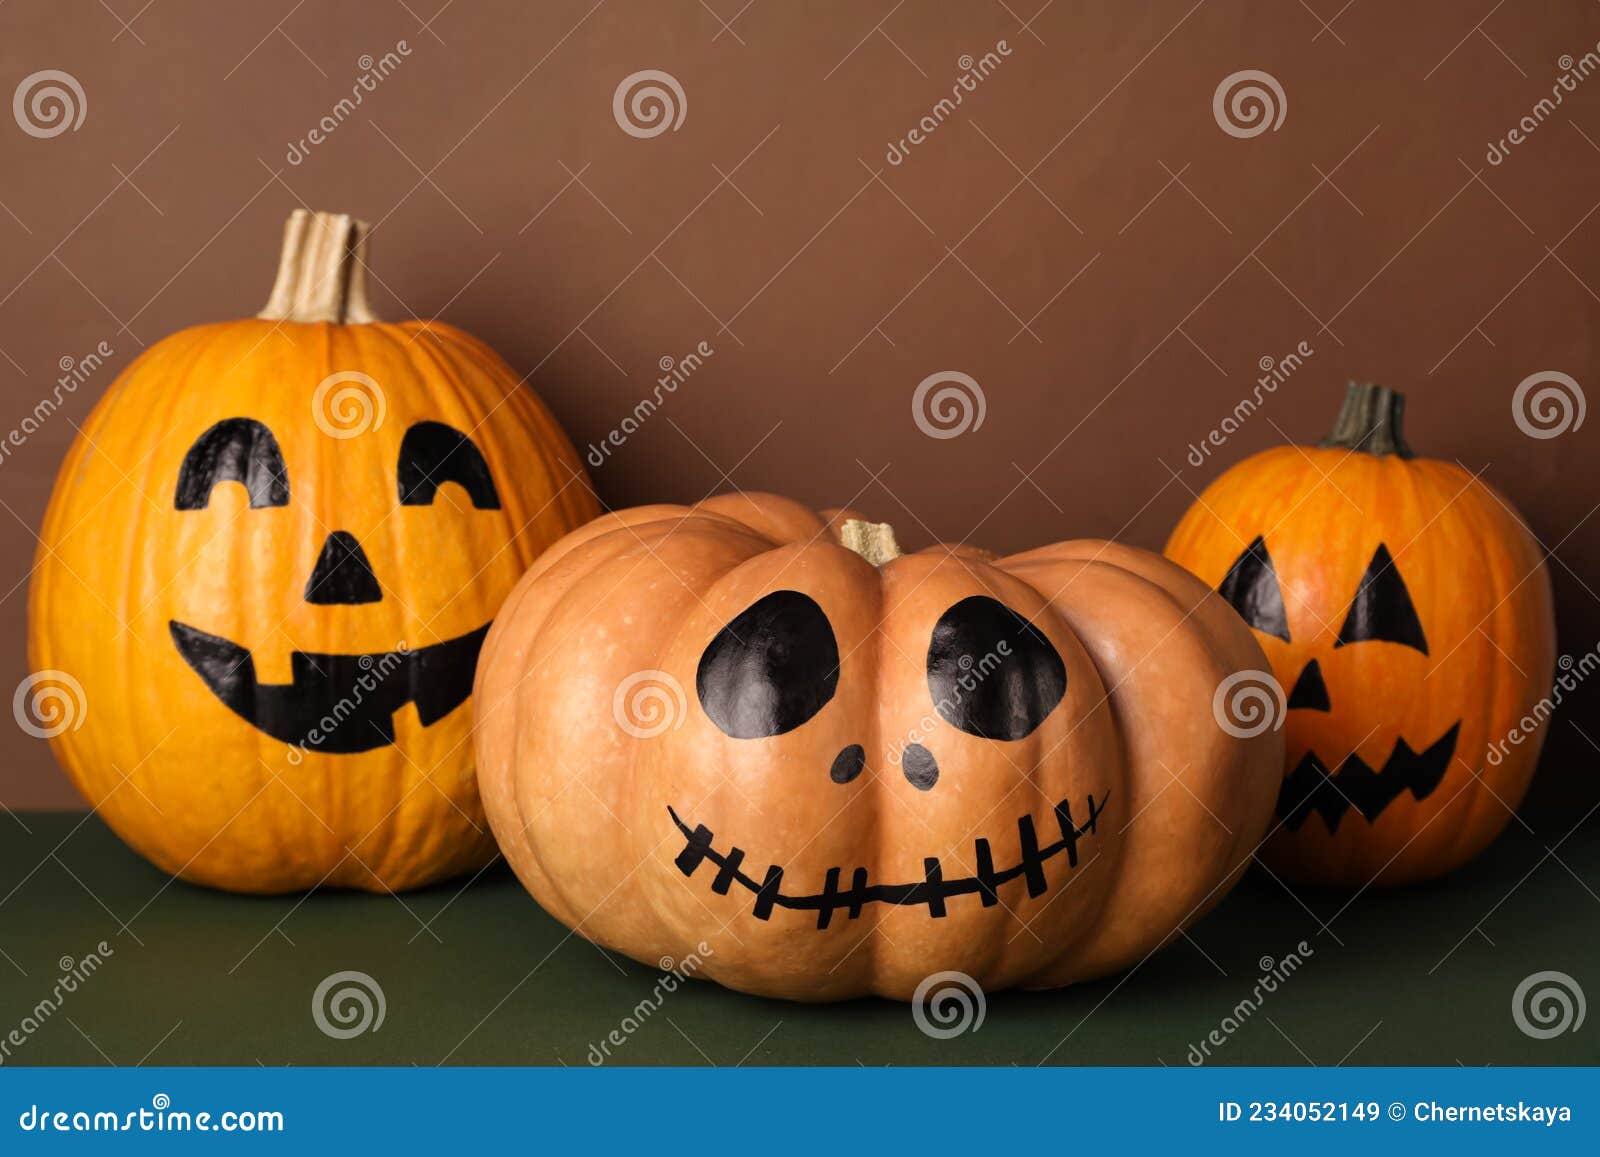 Foto De Stock Rostos Assustadores De Abóboras De Halloween, Royalty-Free